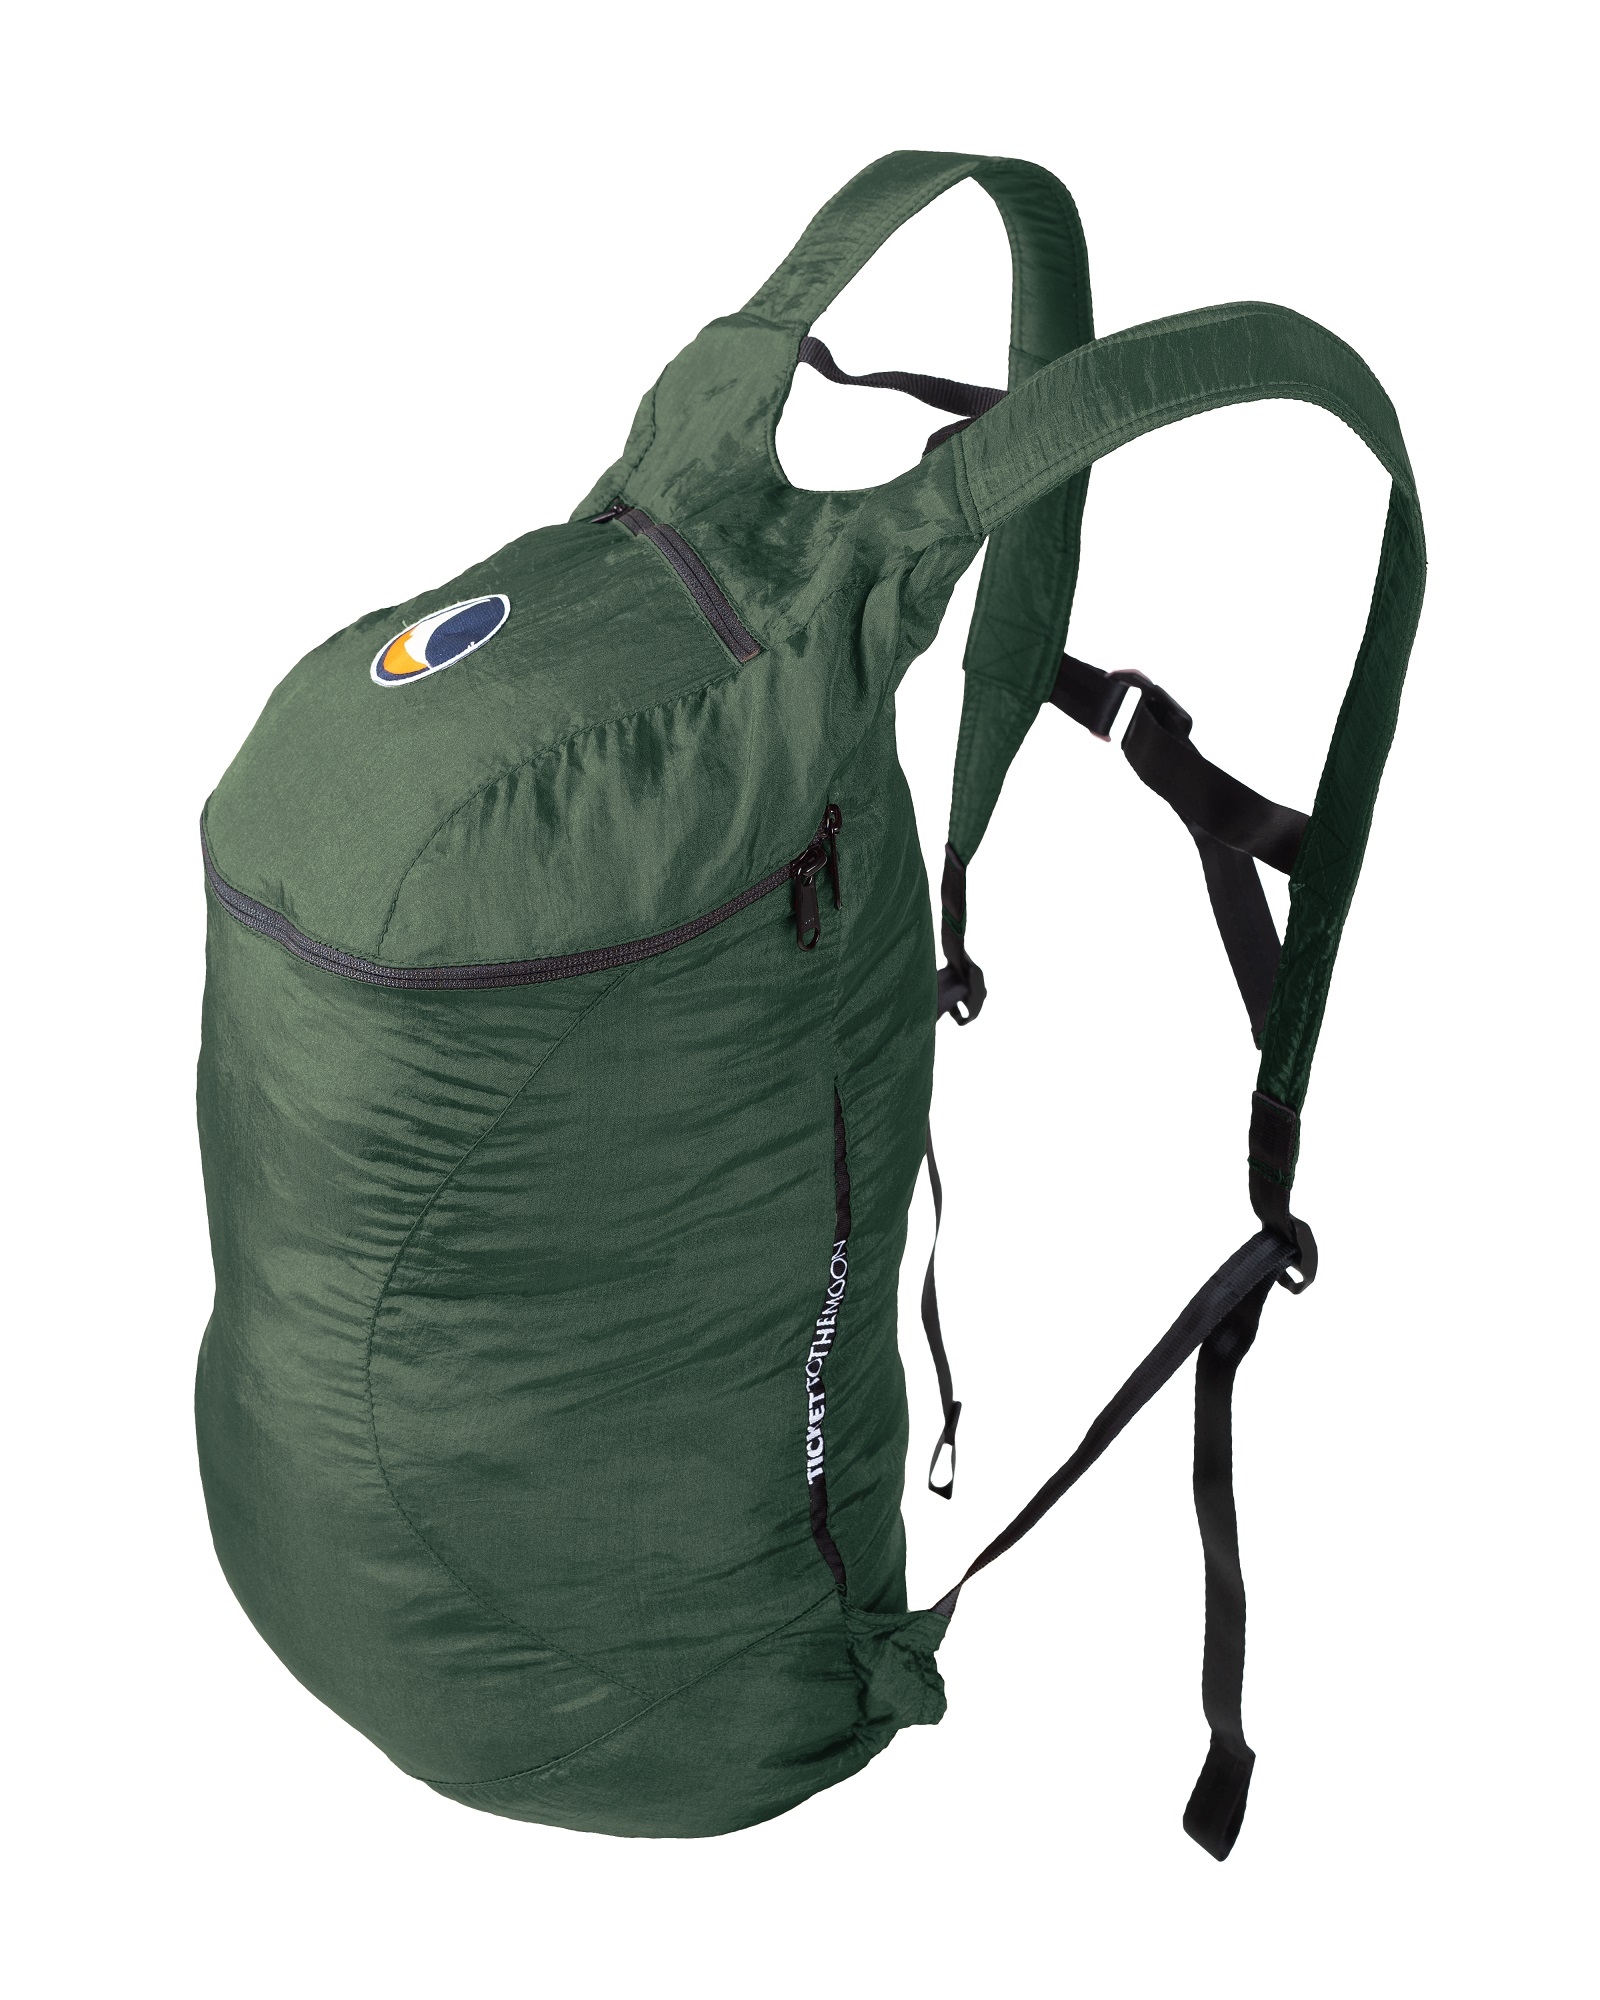 Backpack Plus Premium - 25L